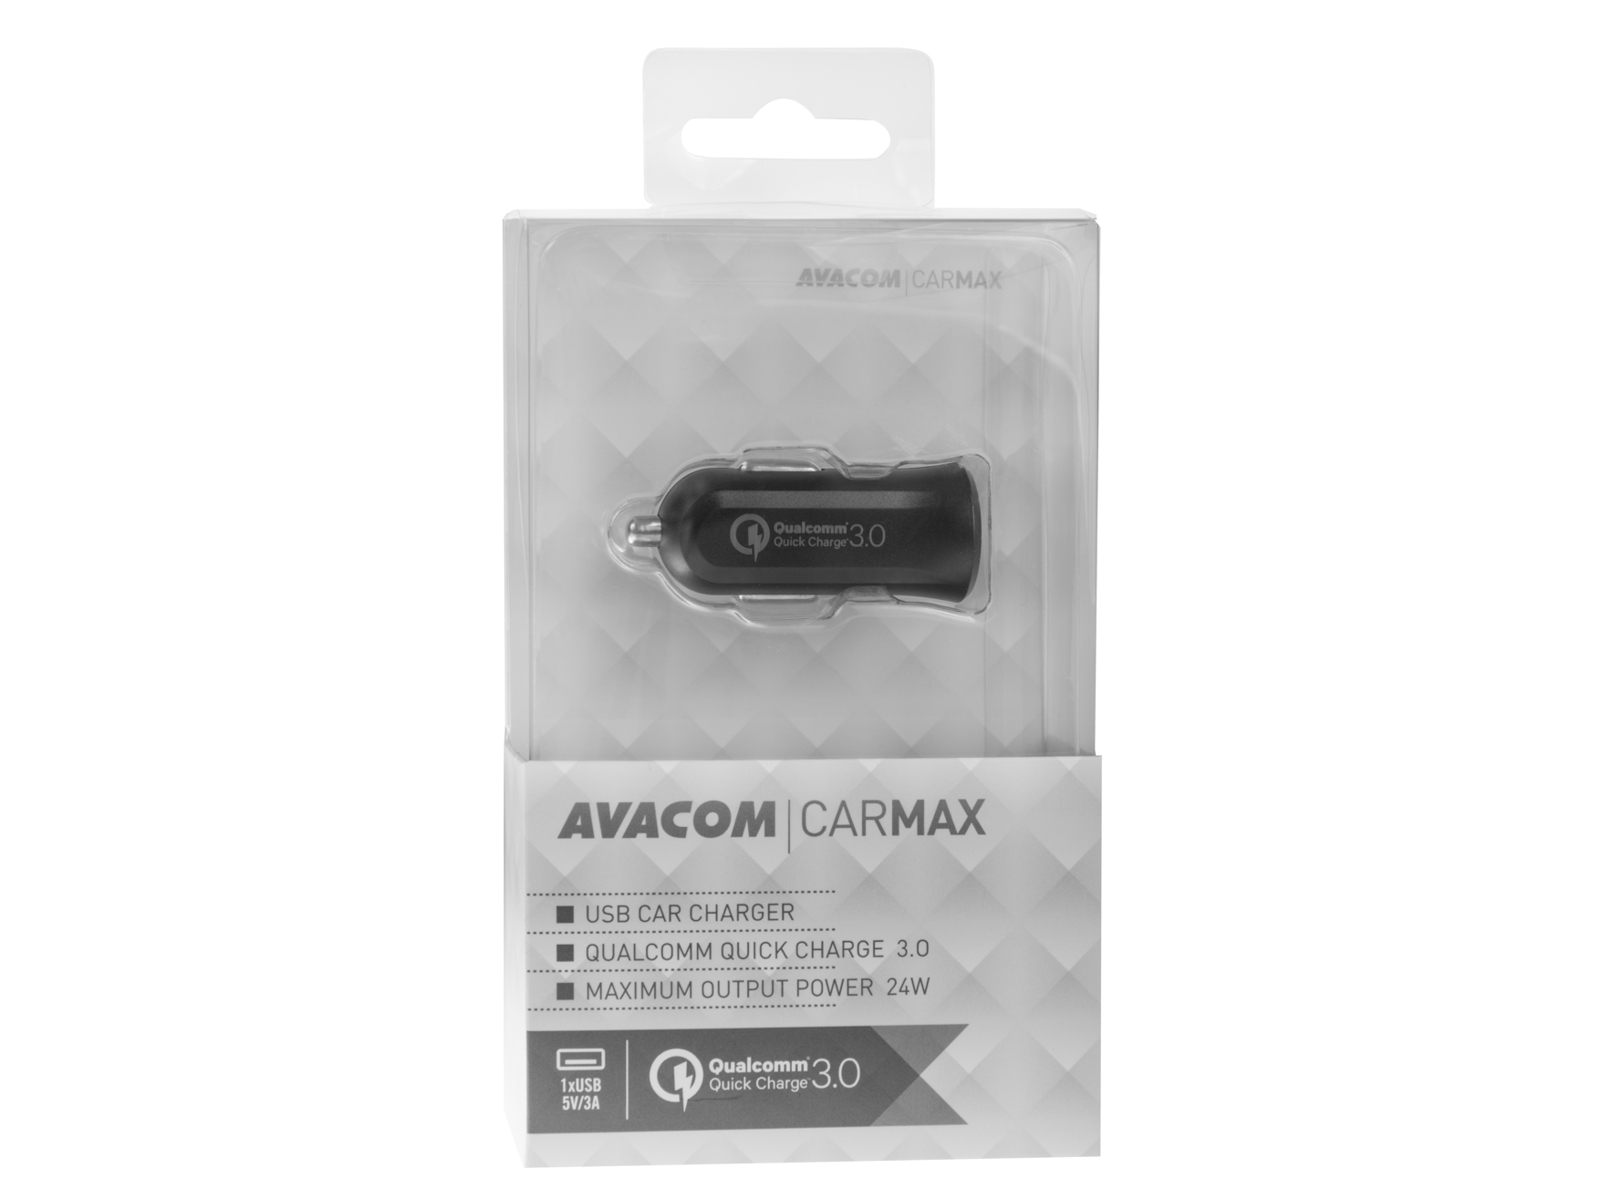 Obrázek AVACOM CarMAX nabíječka do auta s Qualcomm Quick Charge 3.0, černá